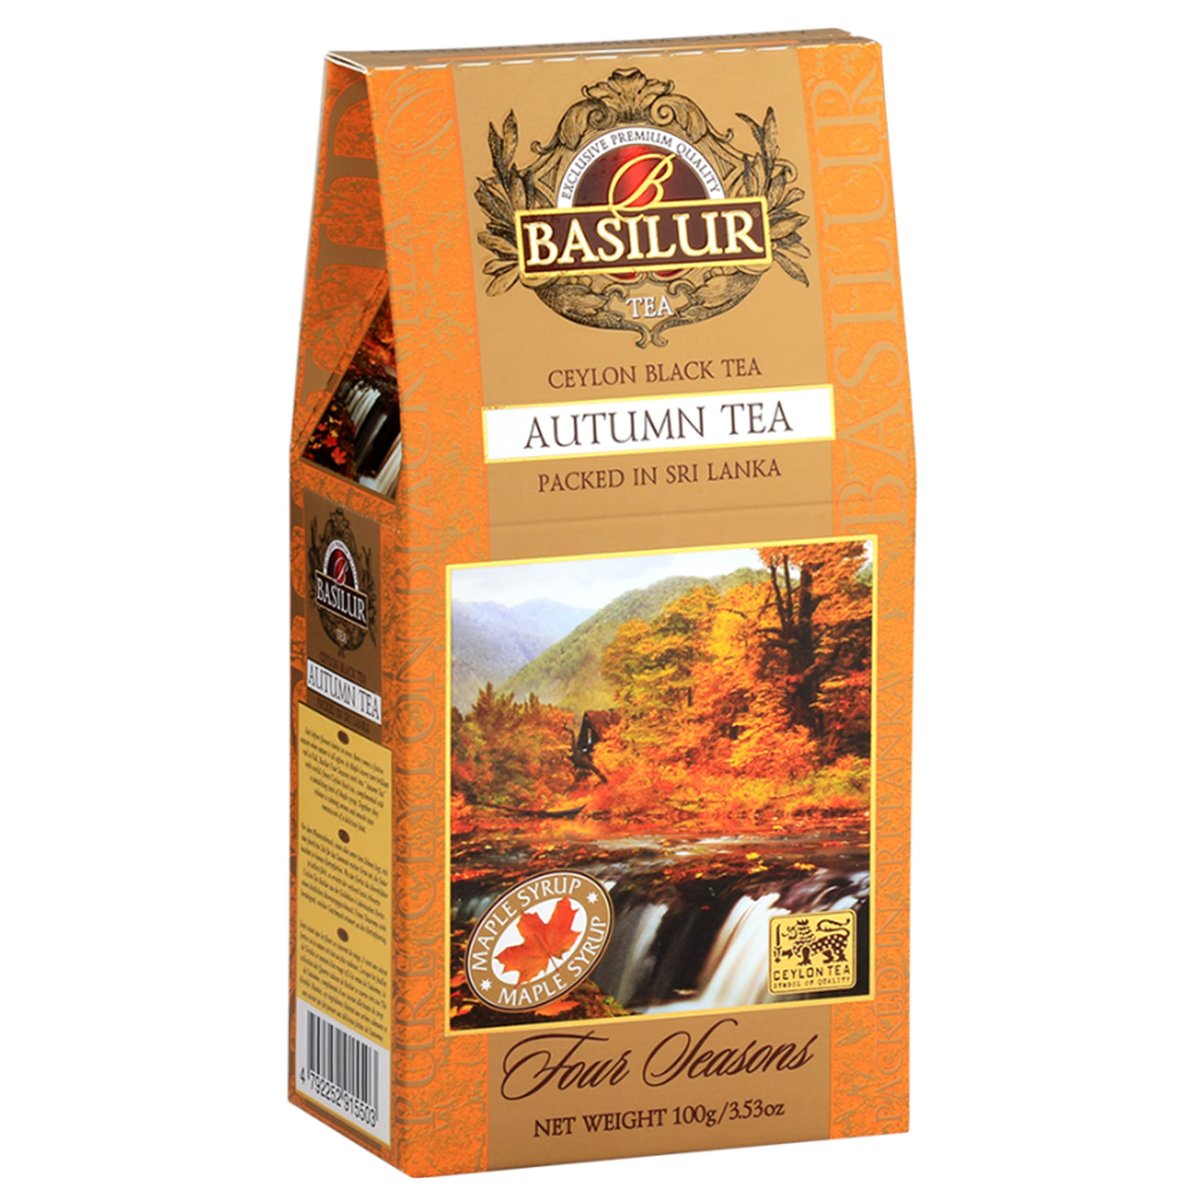 BASILUR Autumn Tea- Czarna herbata cejlońska z dodatkiem krokosza barwierskiego i aromatu klonowego, 100 g x1